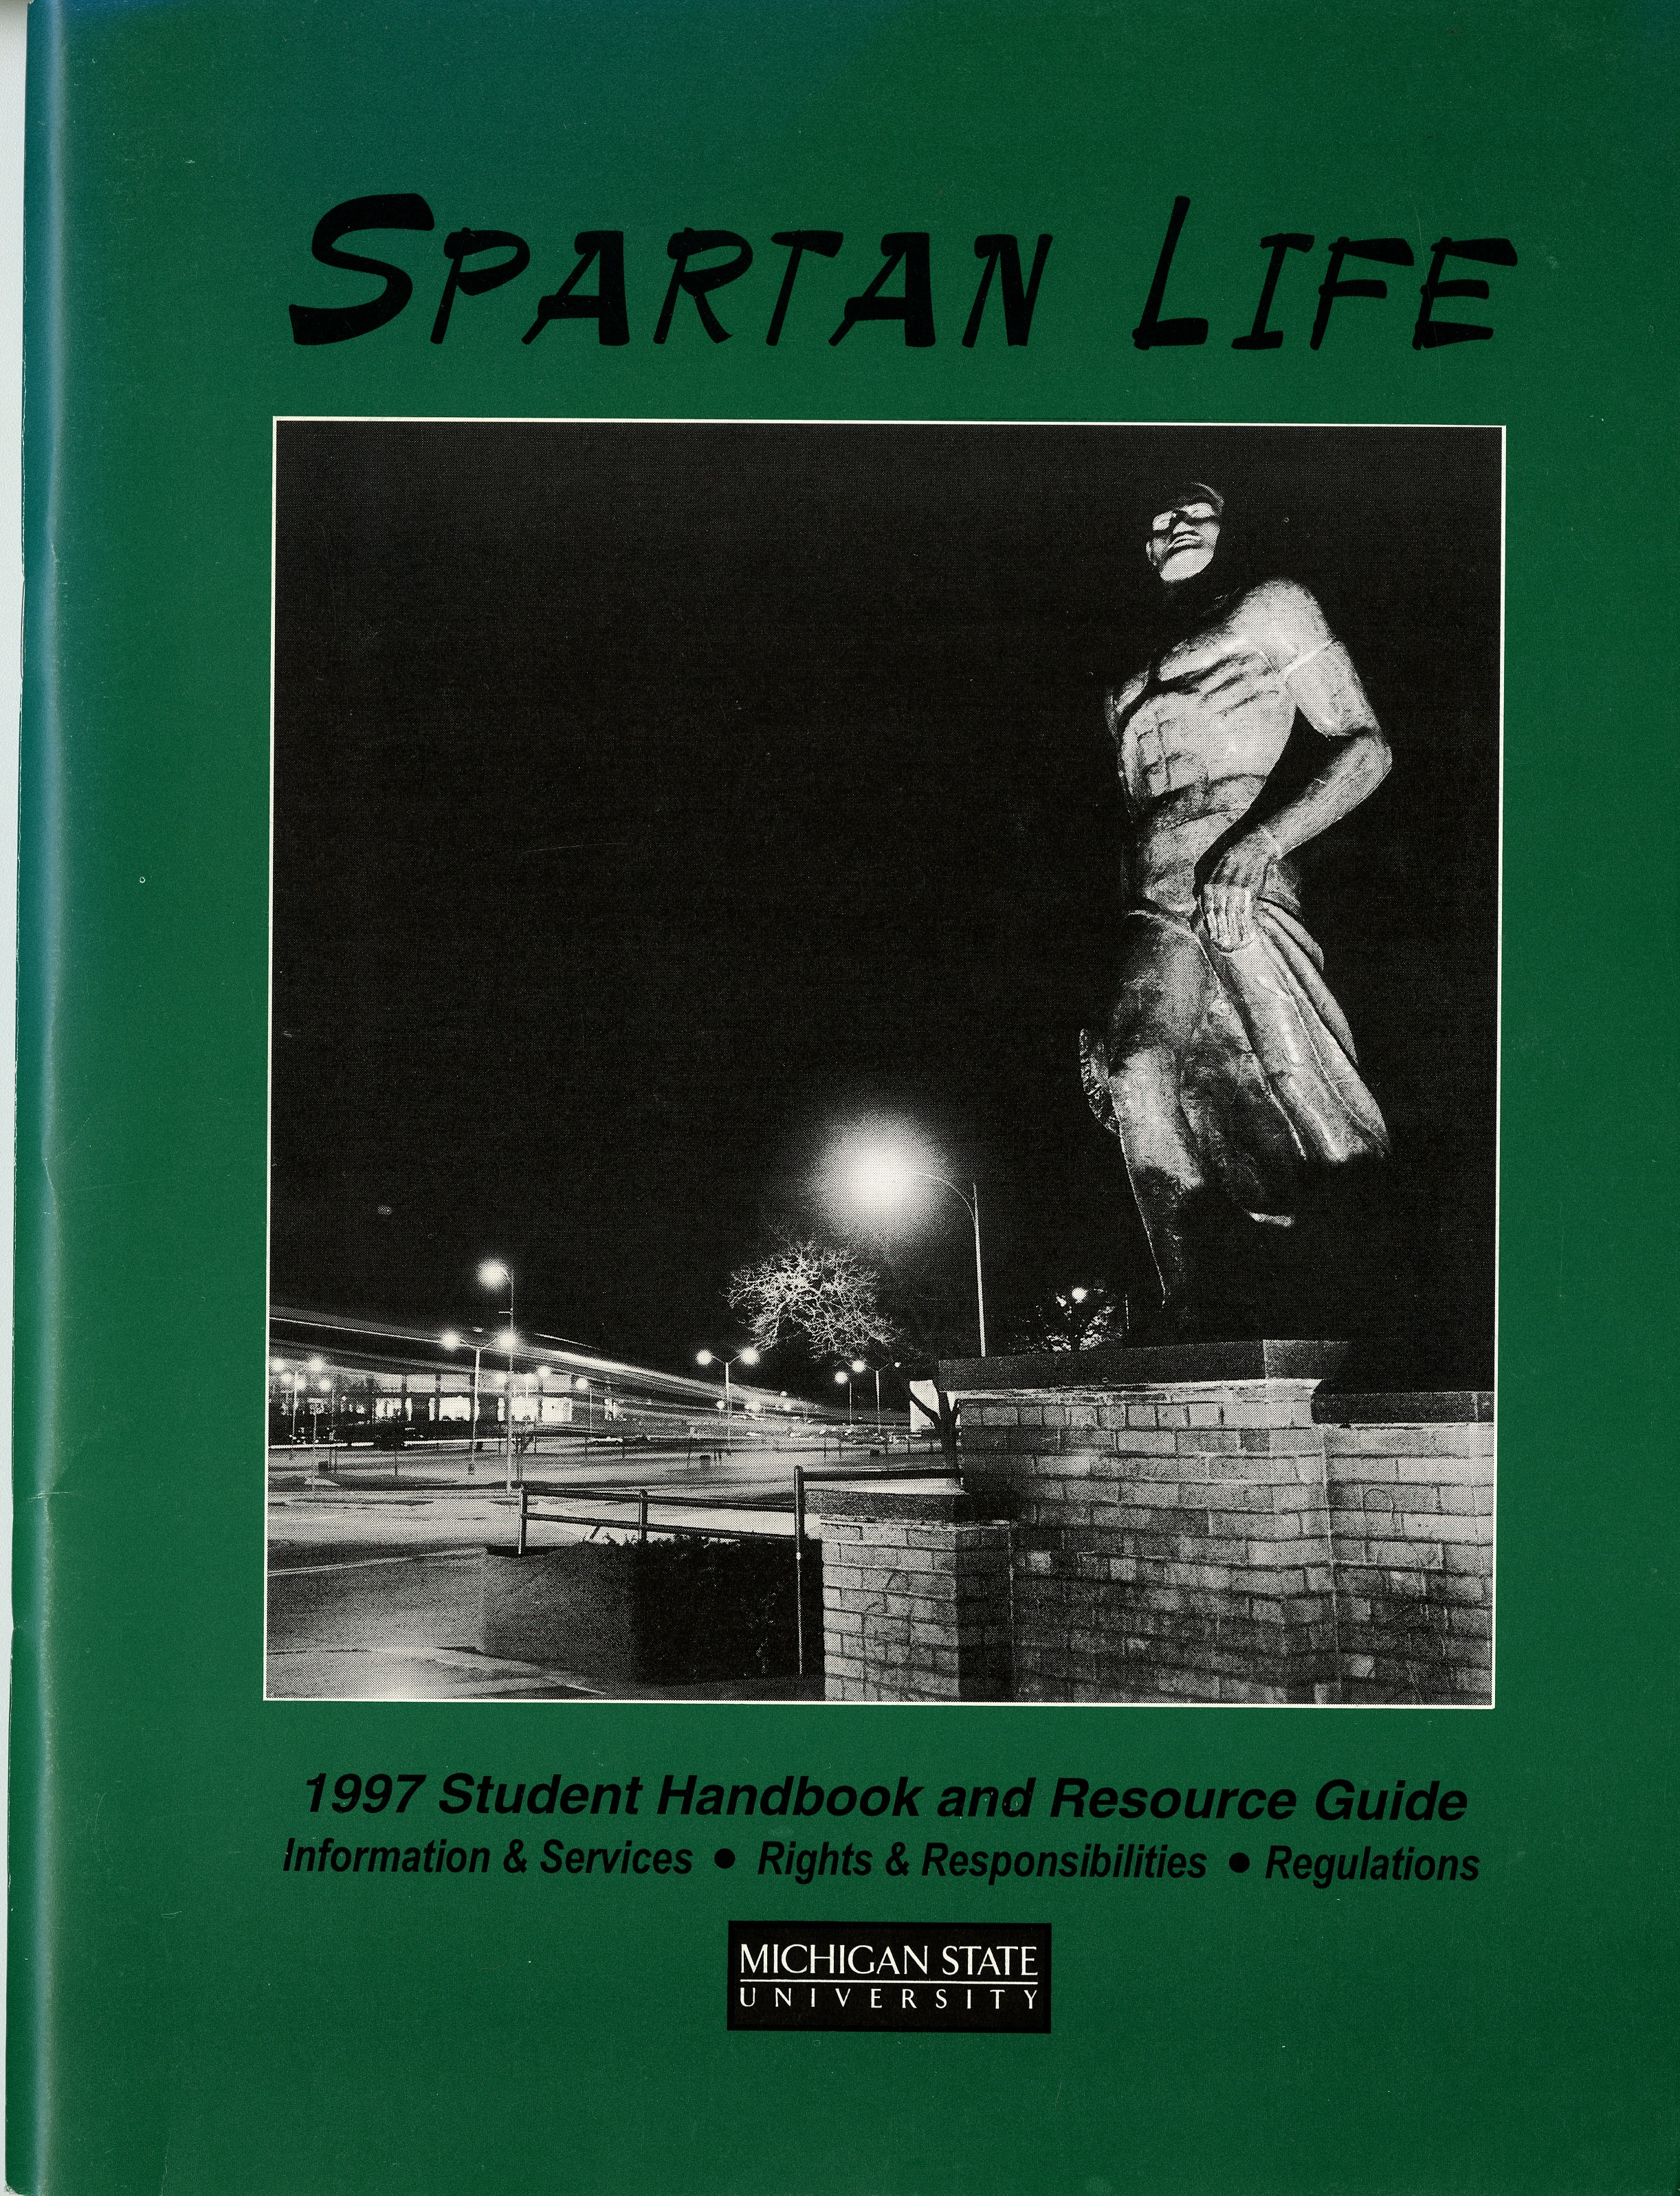 Student Handbook, 1997